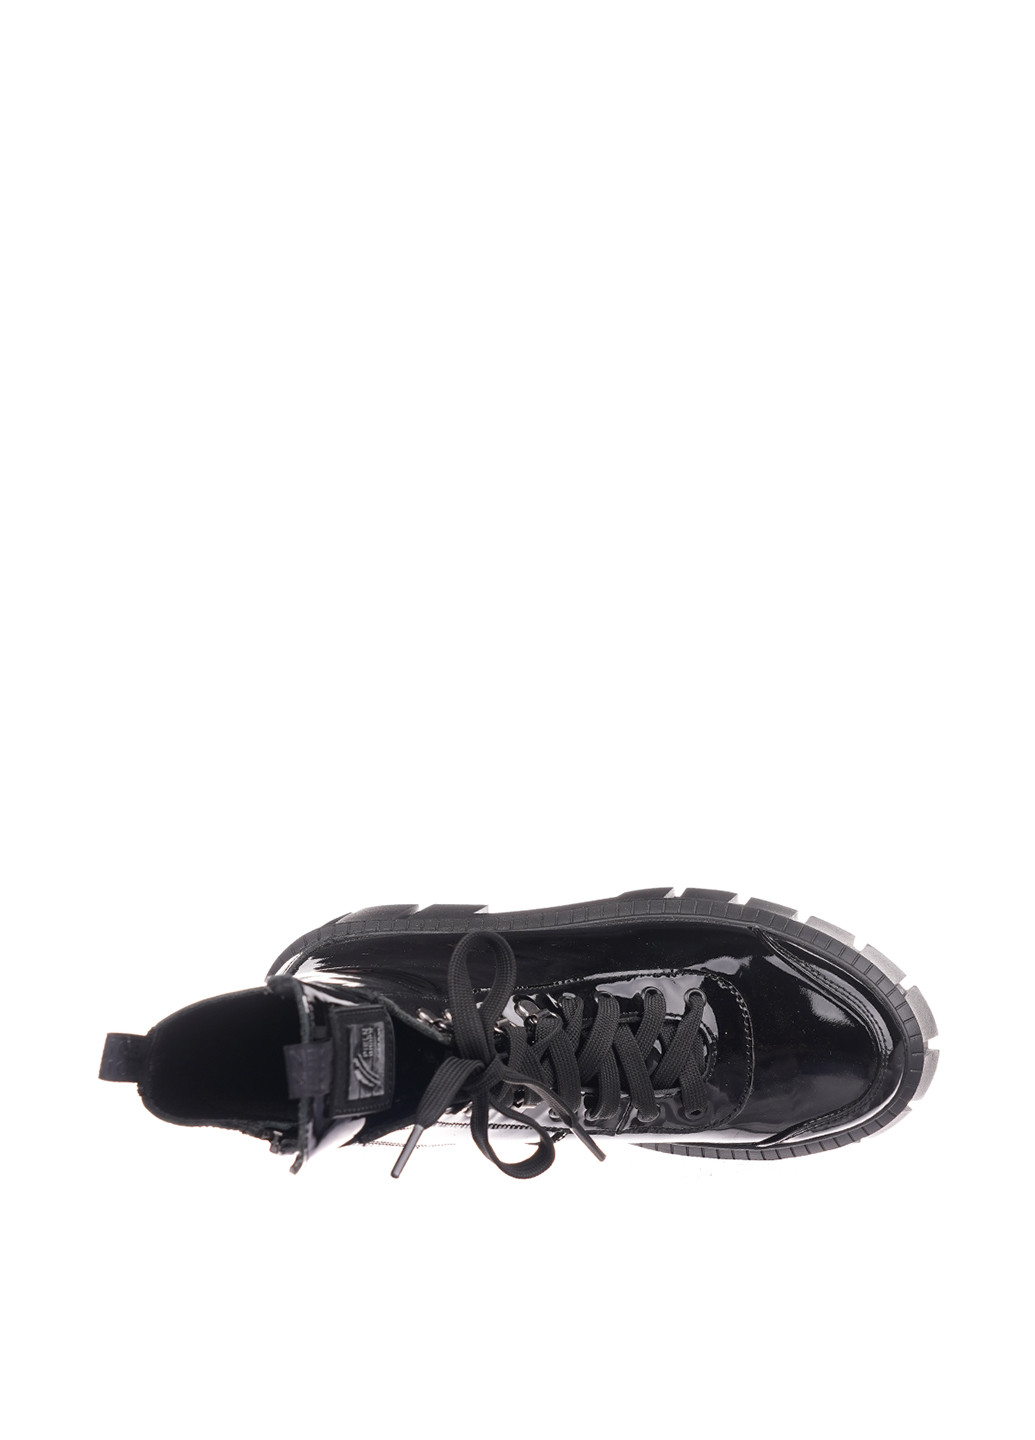 Осенние ботинки AVK на тракторной подошве, лаковые, со шнуровкой